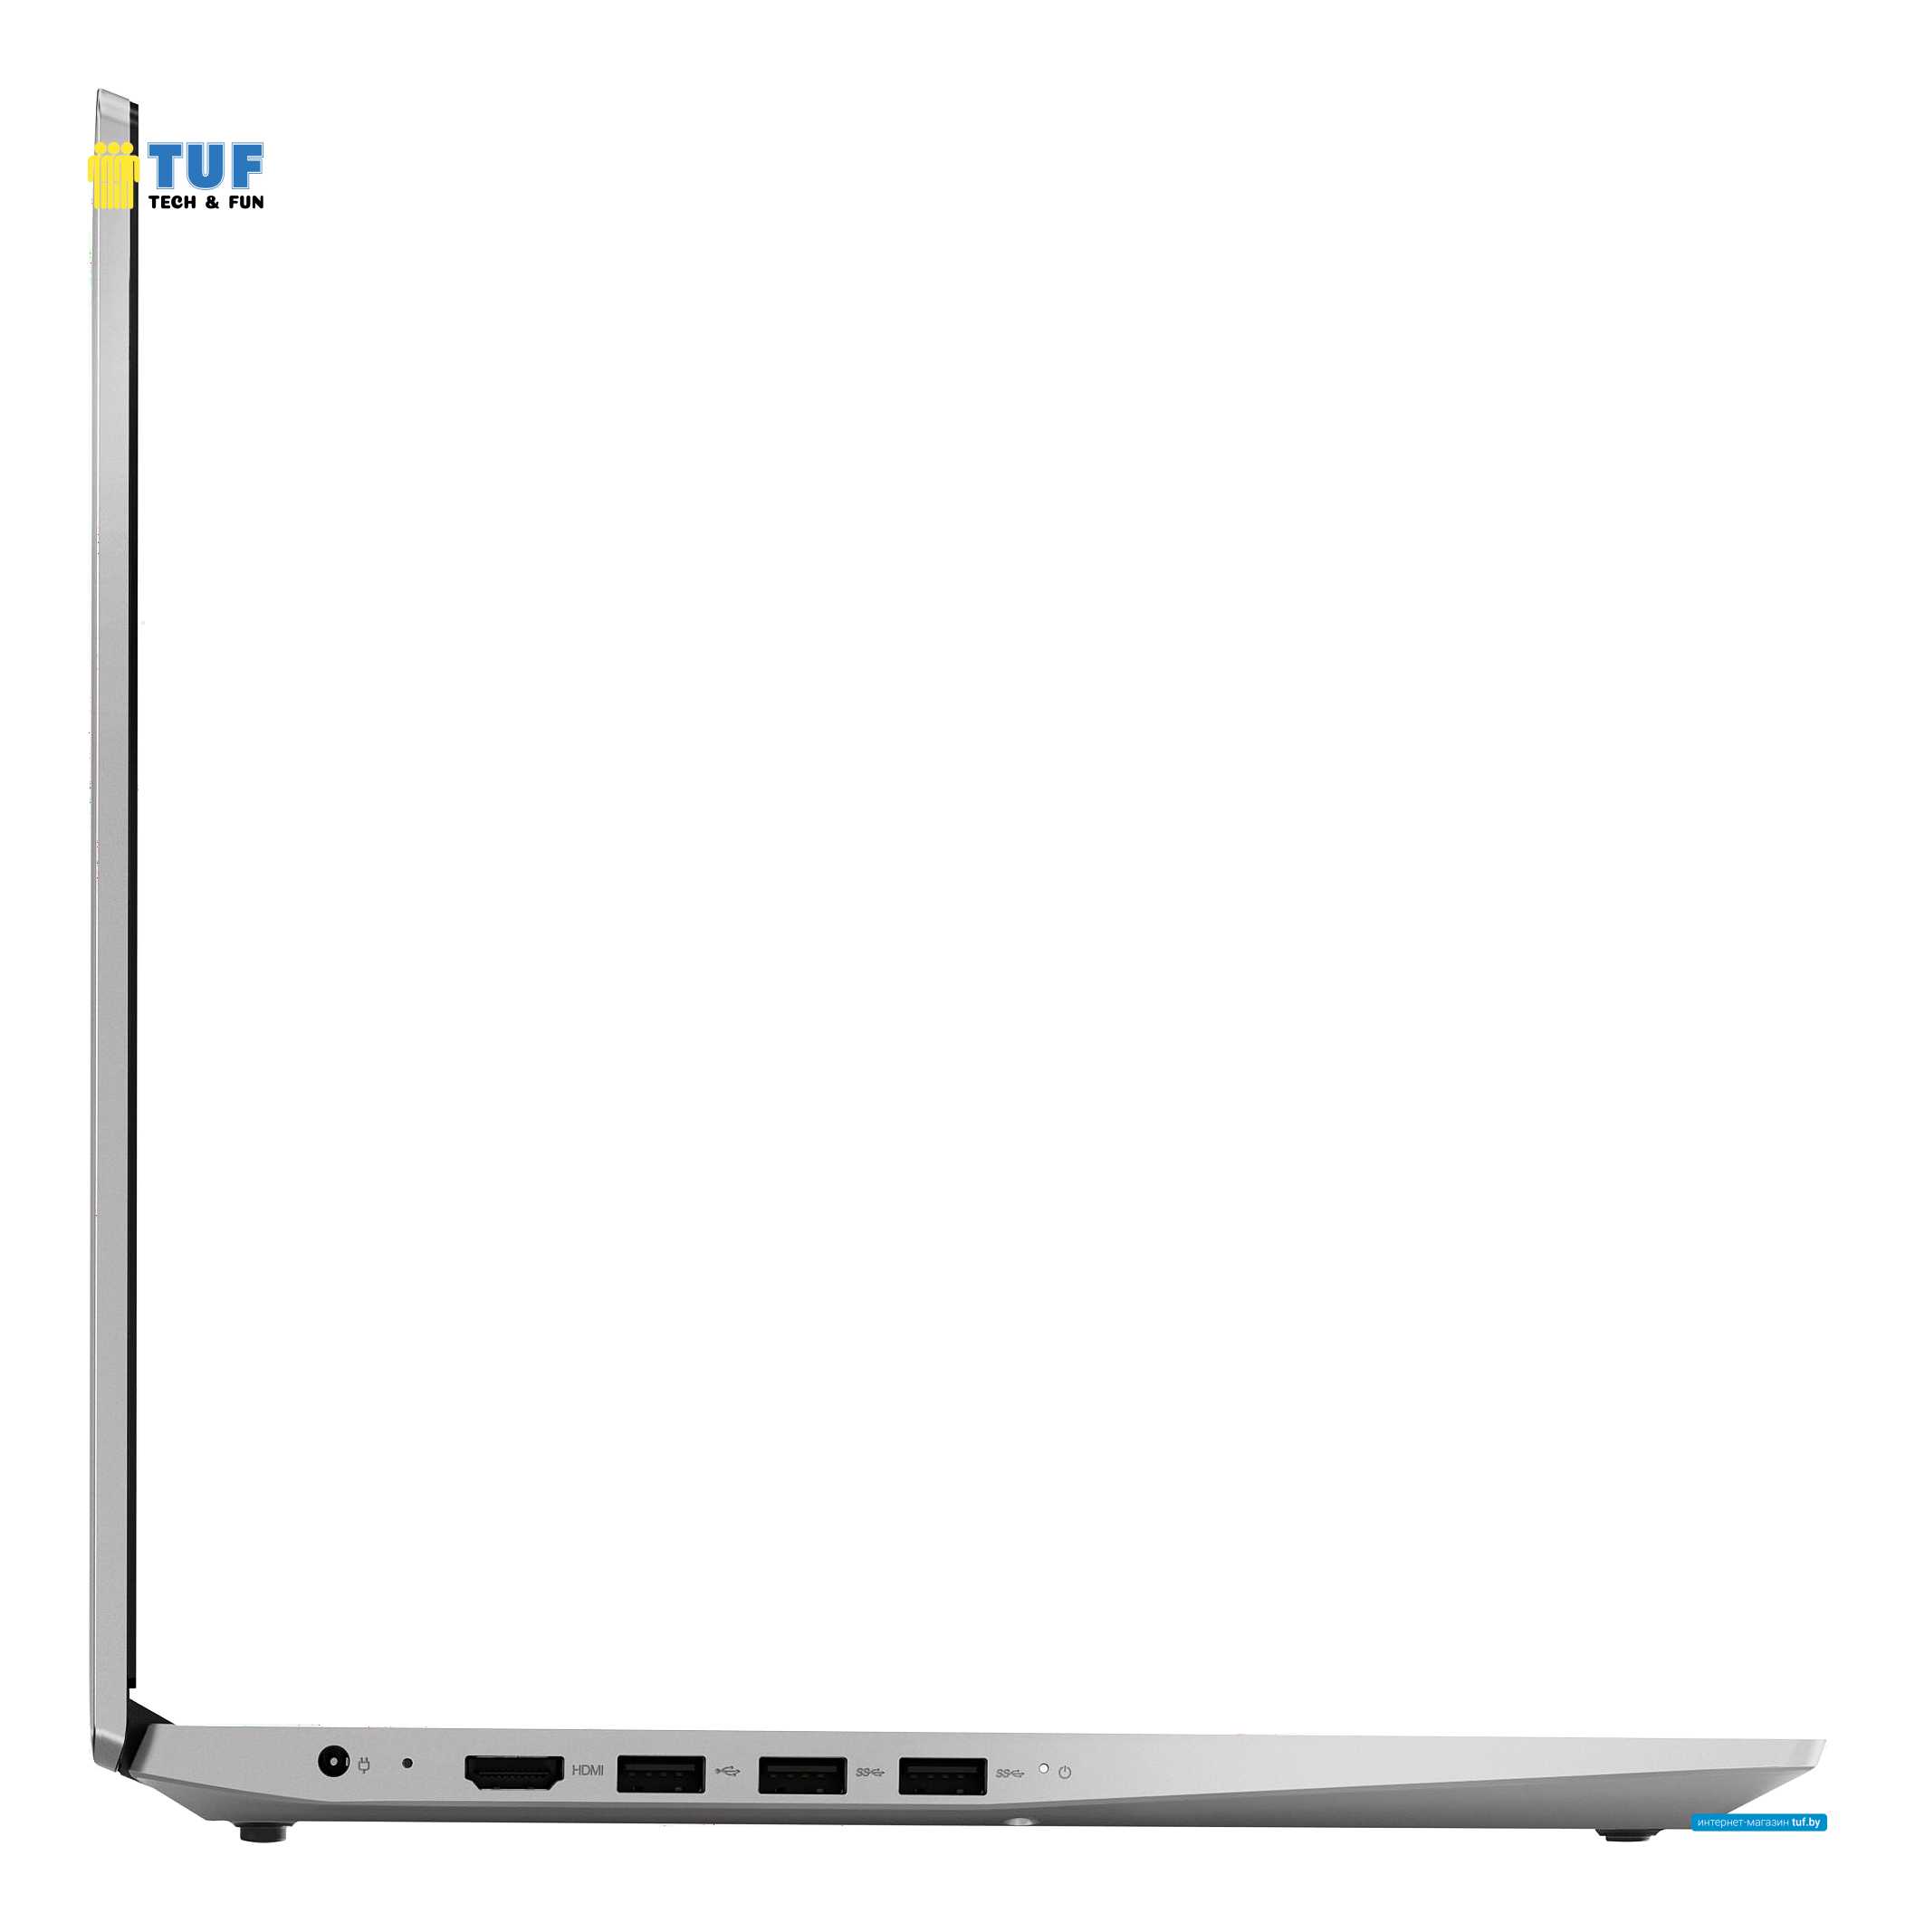 Ноутбук Lenovo IdeaPad S145-15API 81UT000TRK